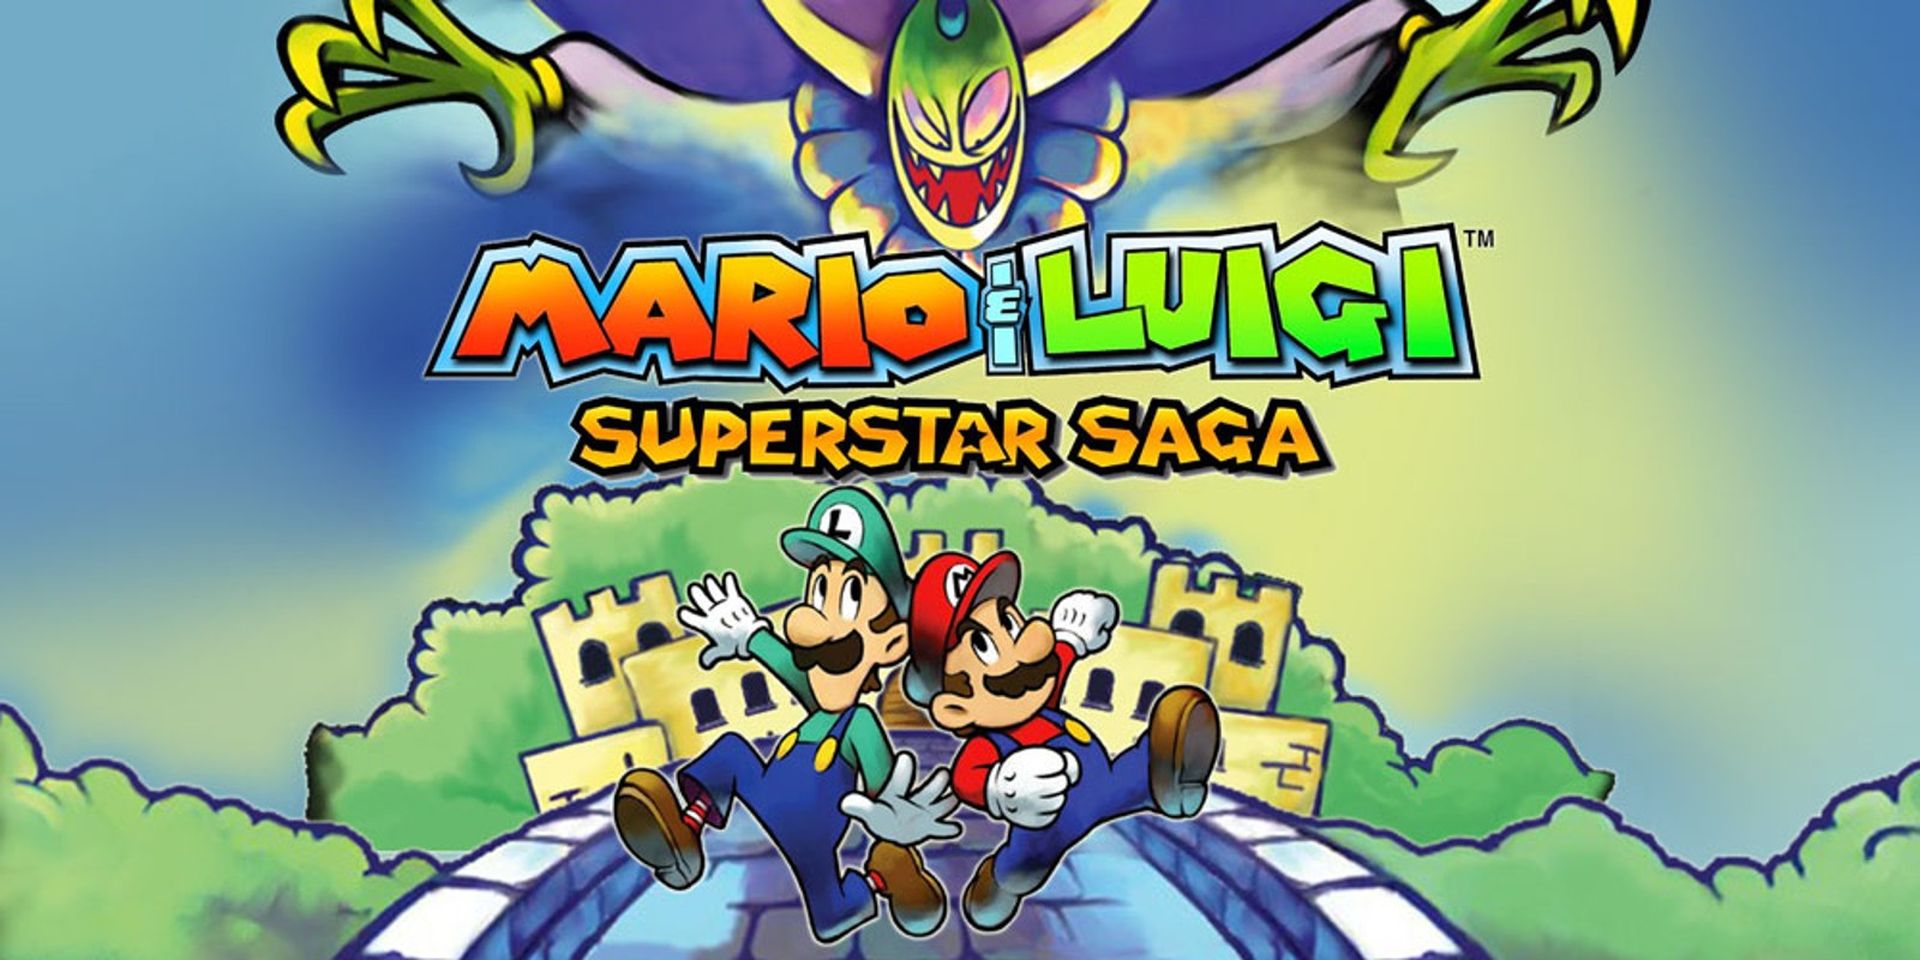 Mario and luigi saga. Марио и Луиджи суперстар сага. Суперзвезда Марио. Суперзвезда сага. Марио и Луиджи игра.